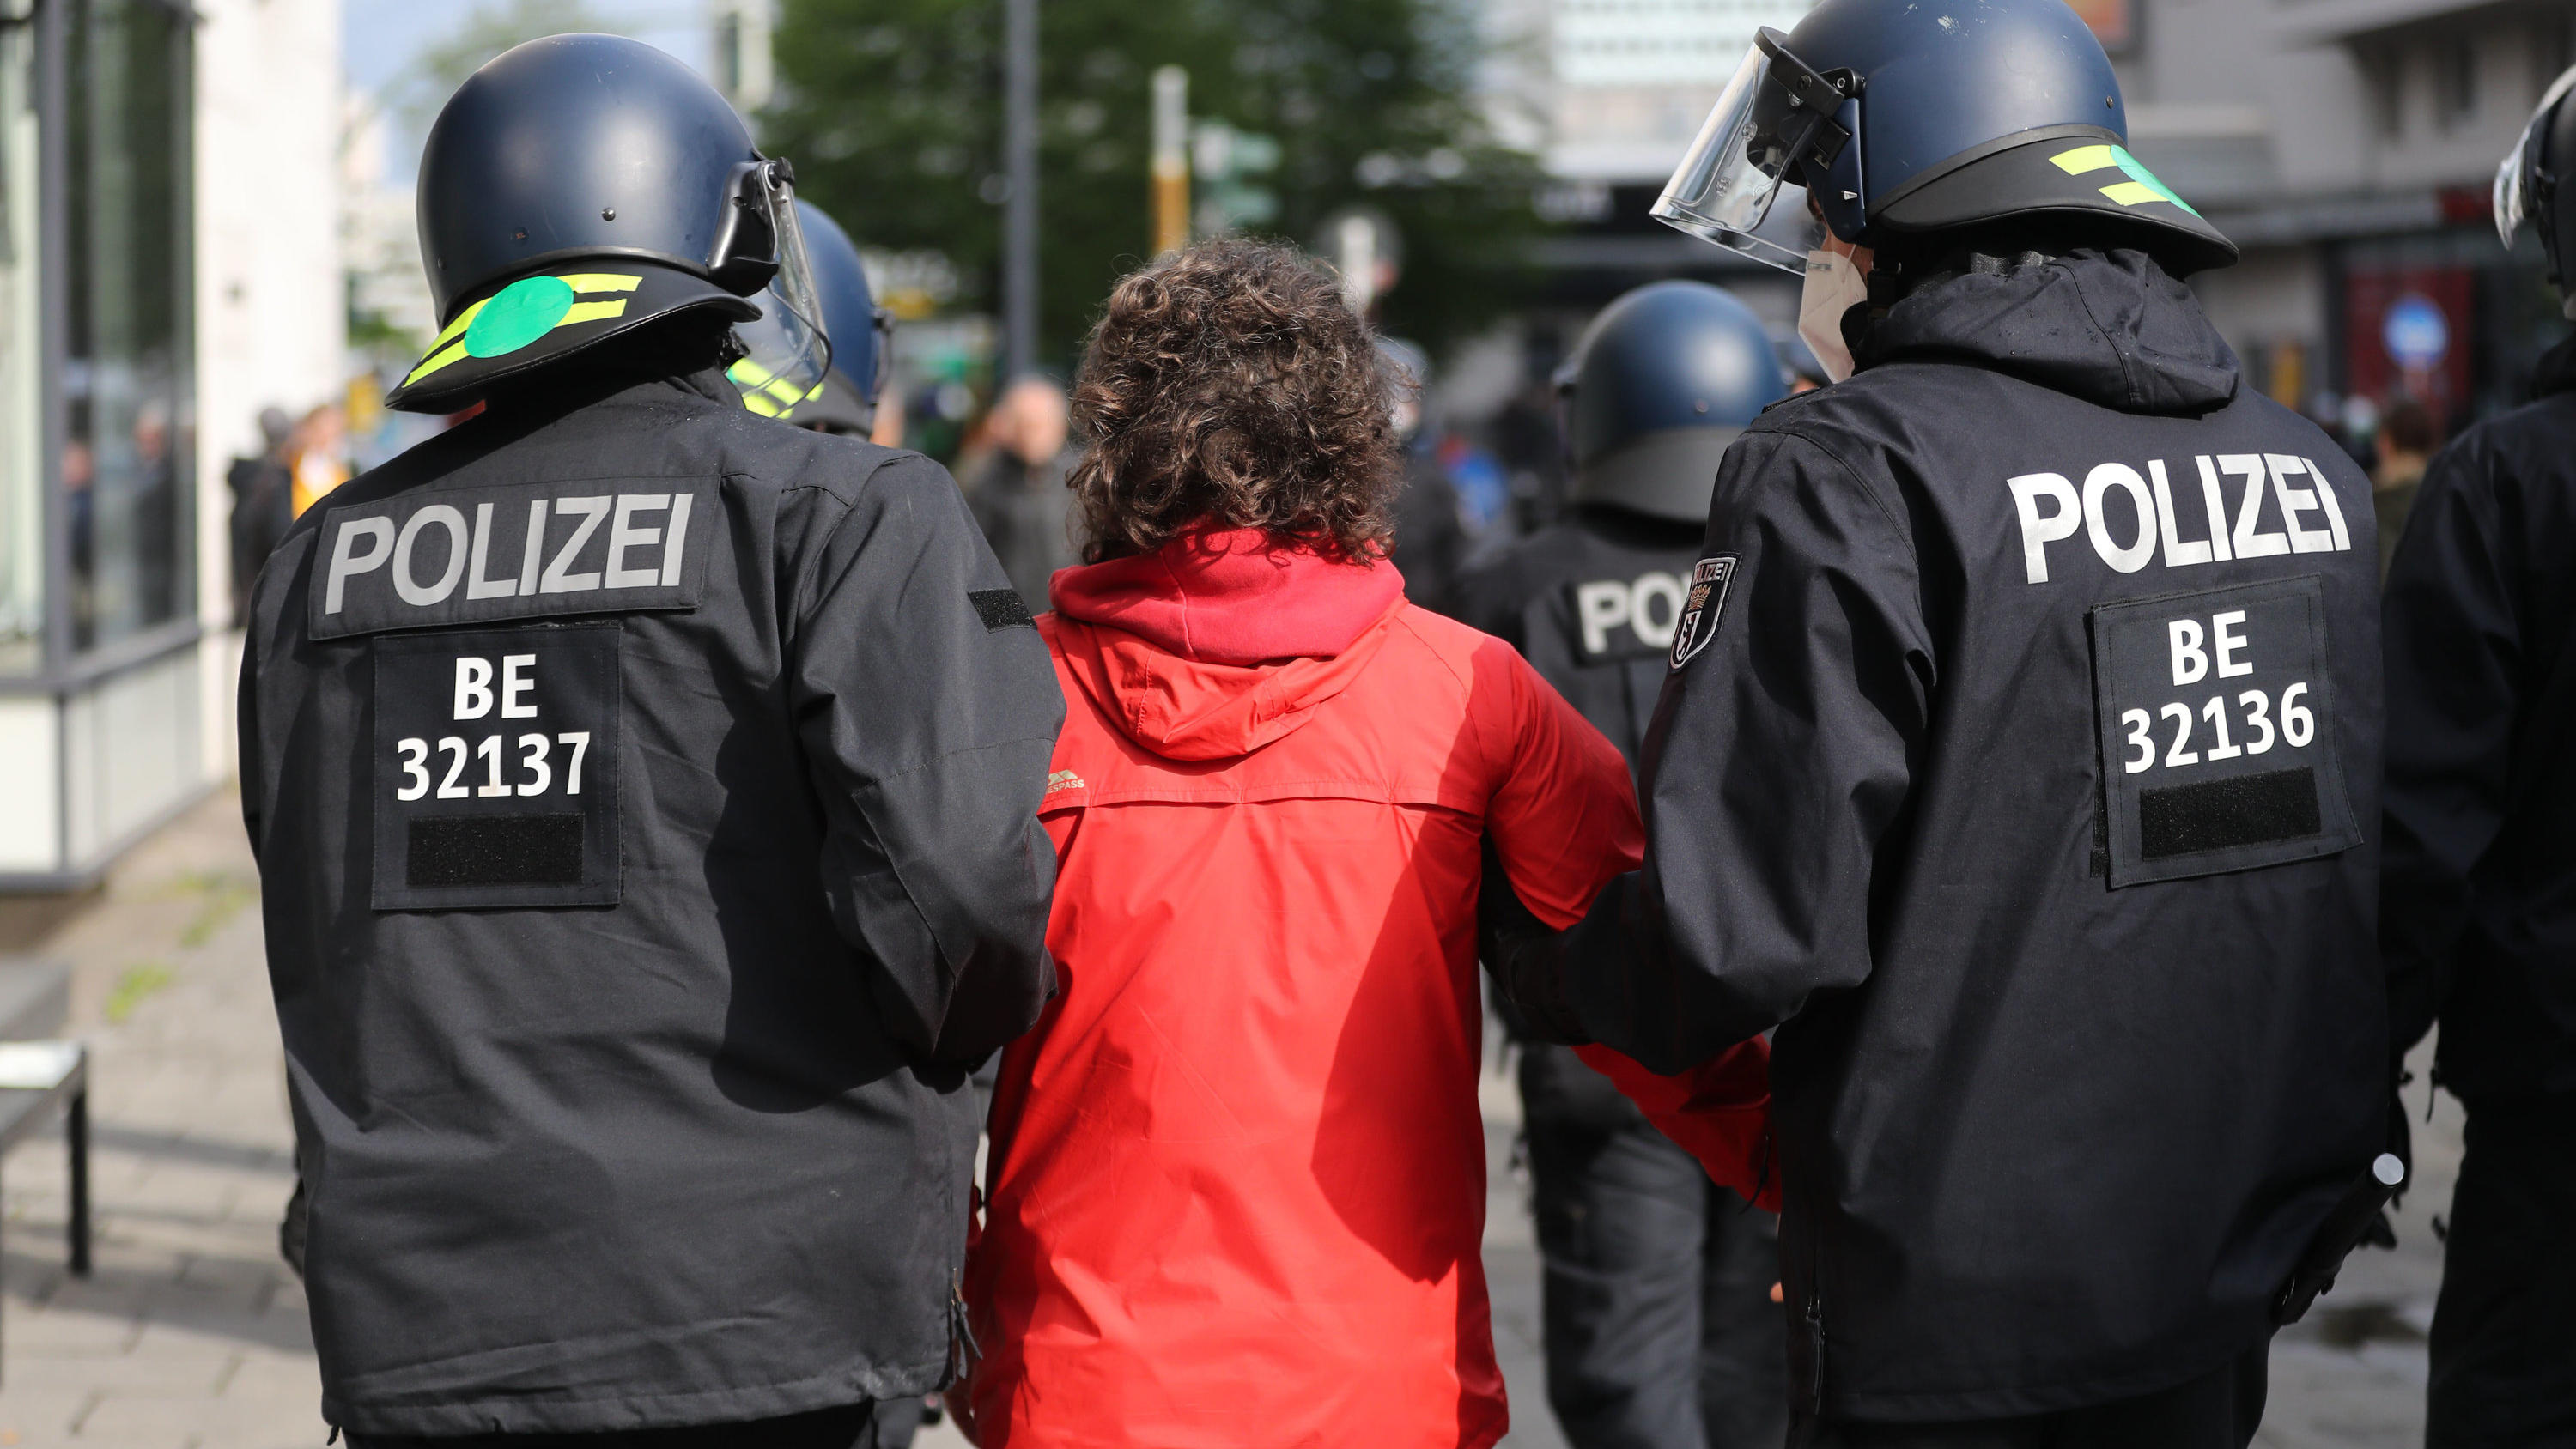 02.05.2020, Berlin: Ein Demonstrant wird in der nähe des Rosa-Luxemburg-Platz bei einer Kundgebung gegen die Corona-Einschränkungen von Polizisten abgeführt. Verschiedene Kundgebungen finden auf dem Rosa-Luxemburg-Platz statt. Zu einer der Kundgebung